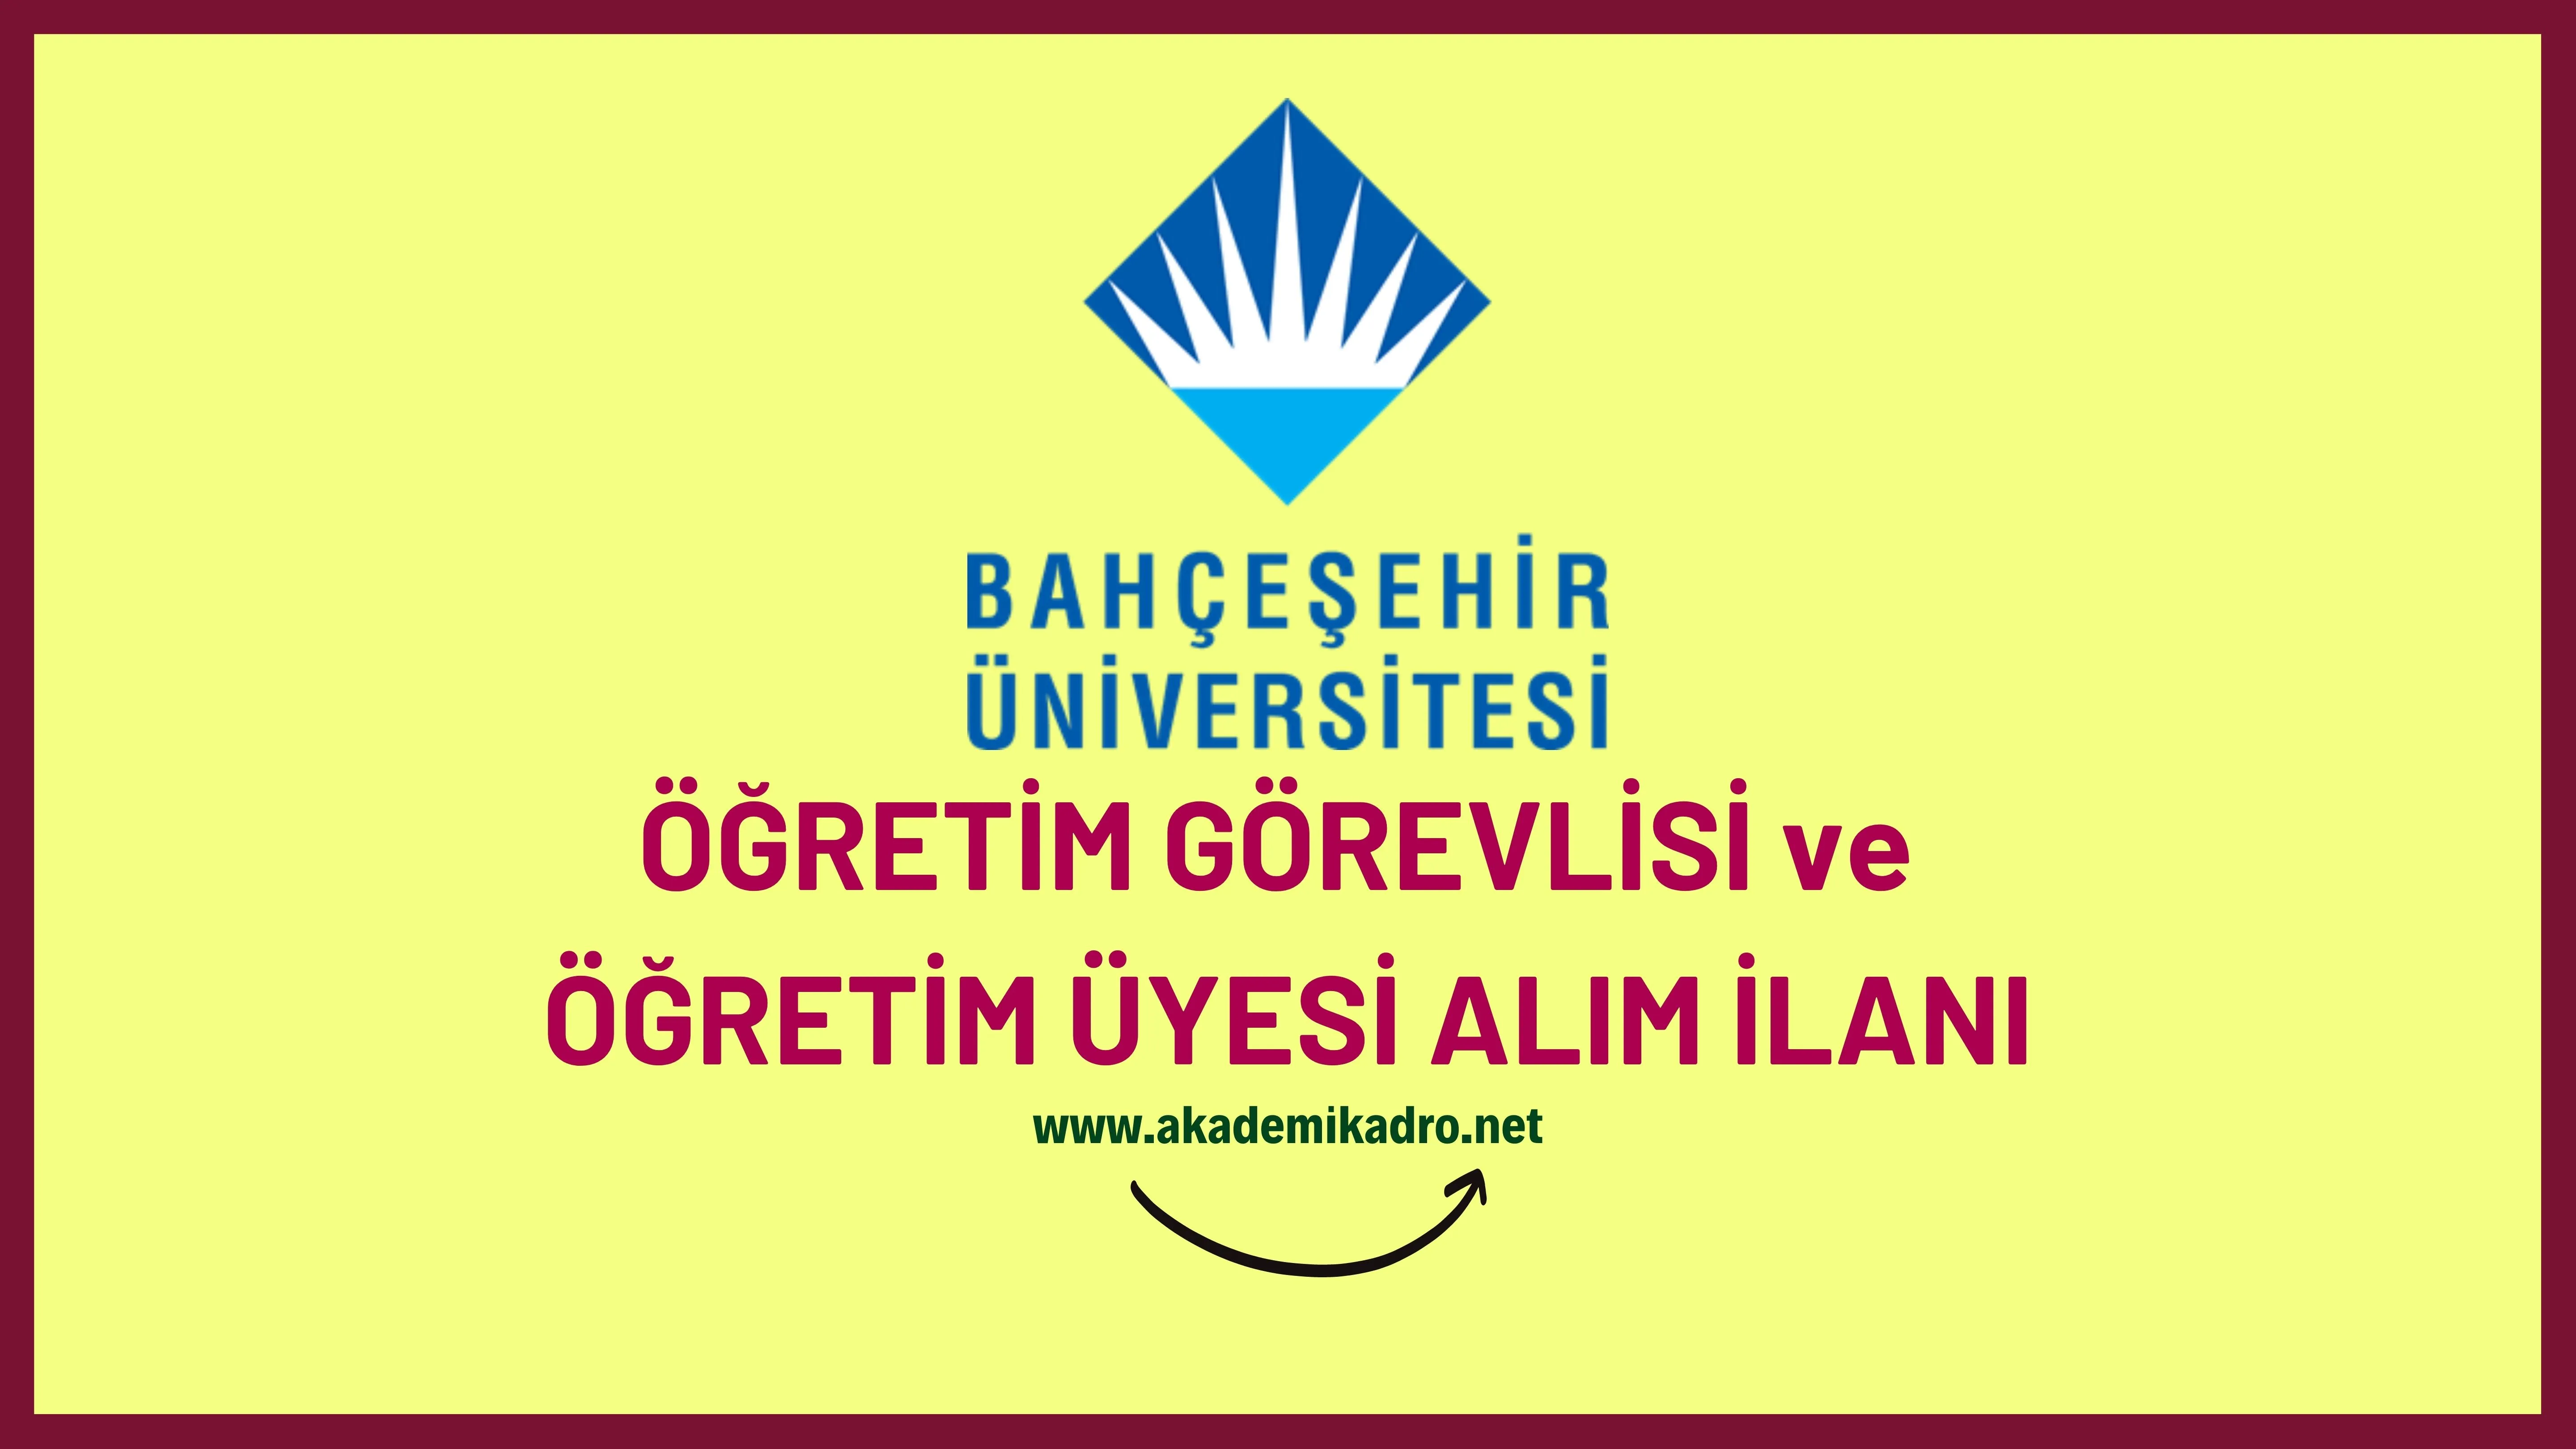 Bahçeşehir Üniversitesi 23 Öğretim üyesi, 8 Öğretim görevlisi ve 3 Araştırma görevlisi alacaktır. Son başvuru tarihi 06 Ekim 2023